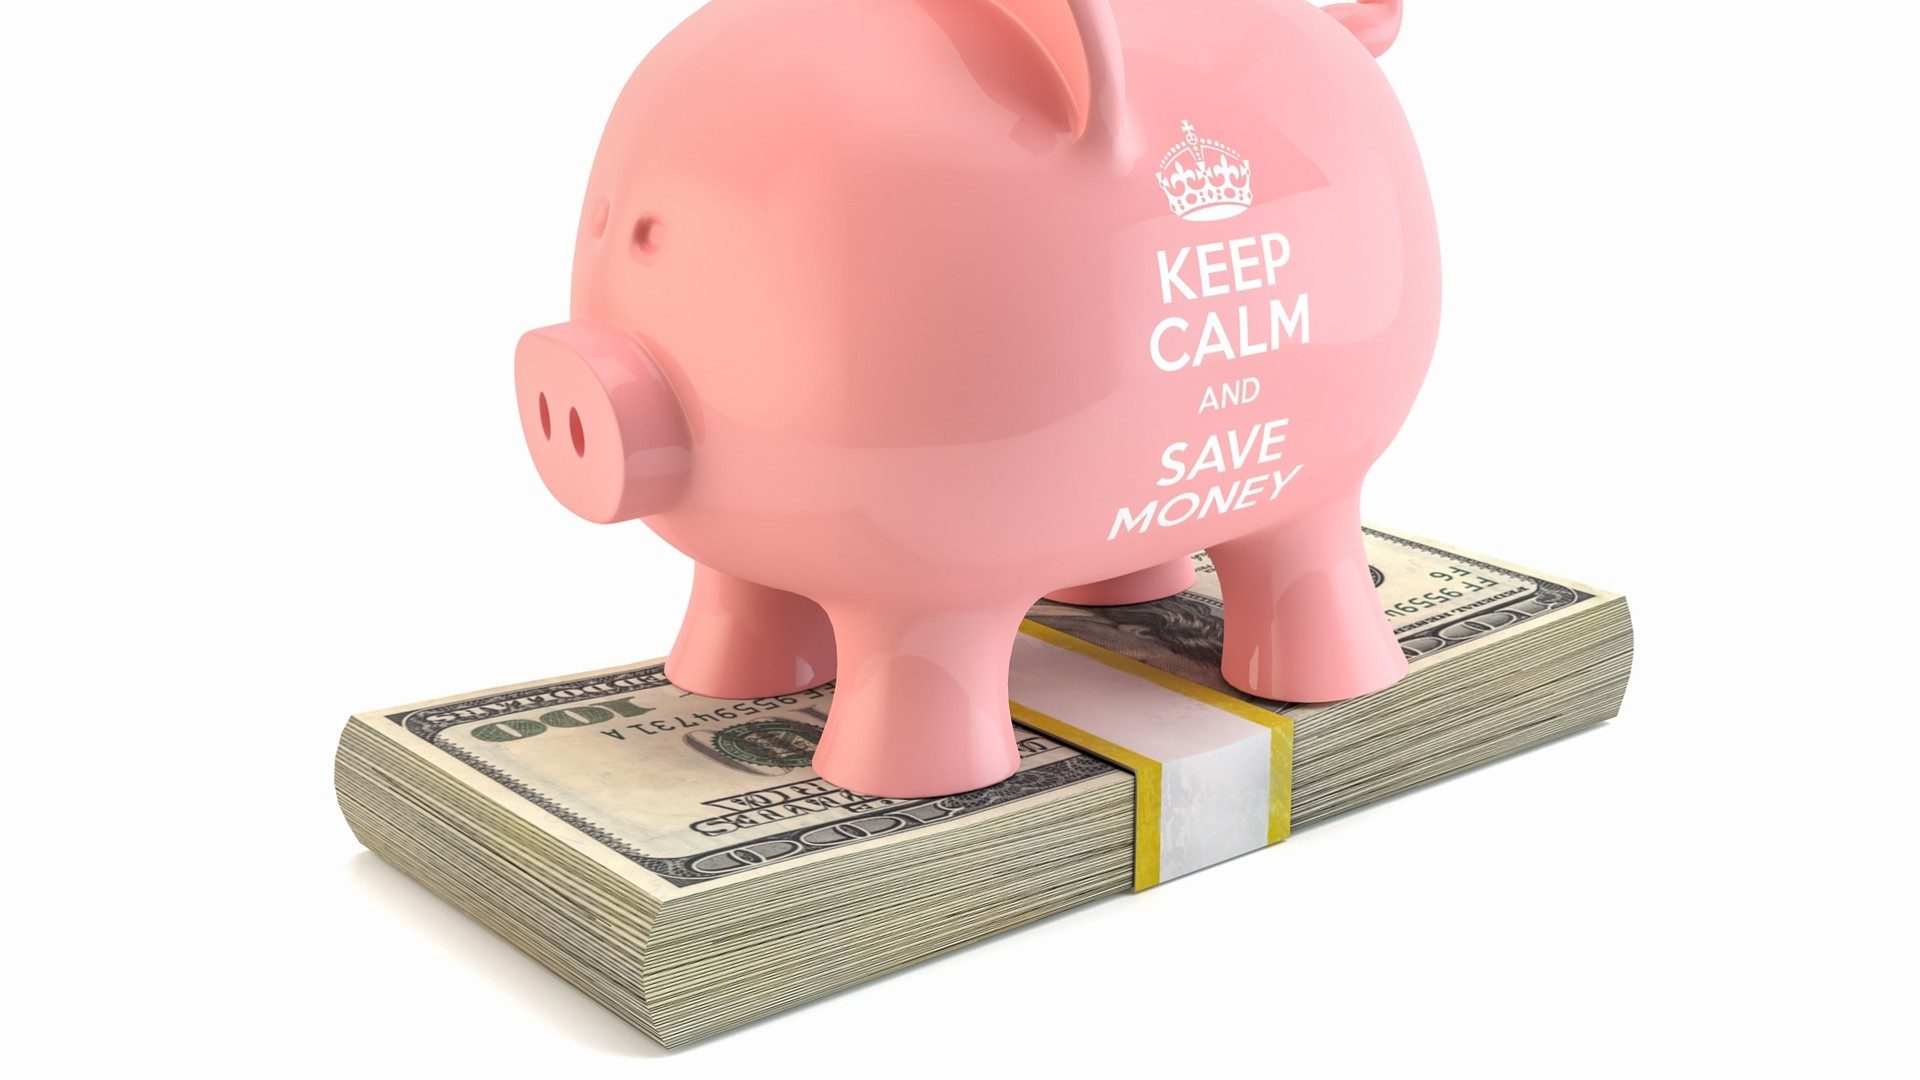 Ein Sparschwein mit der Aufschrift "Keep Calm and Save Money" steht auf einem Bündel Geldscheine